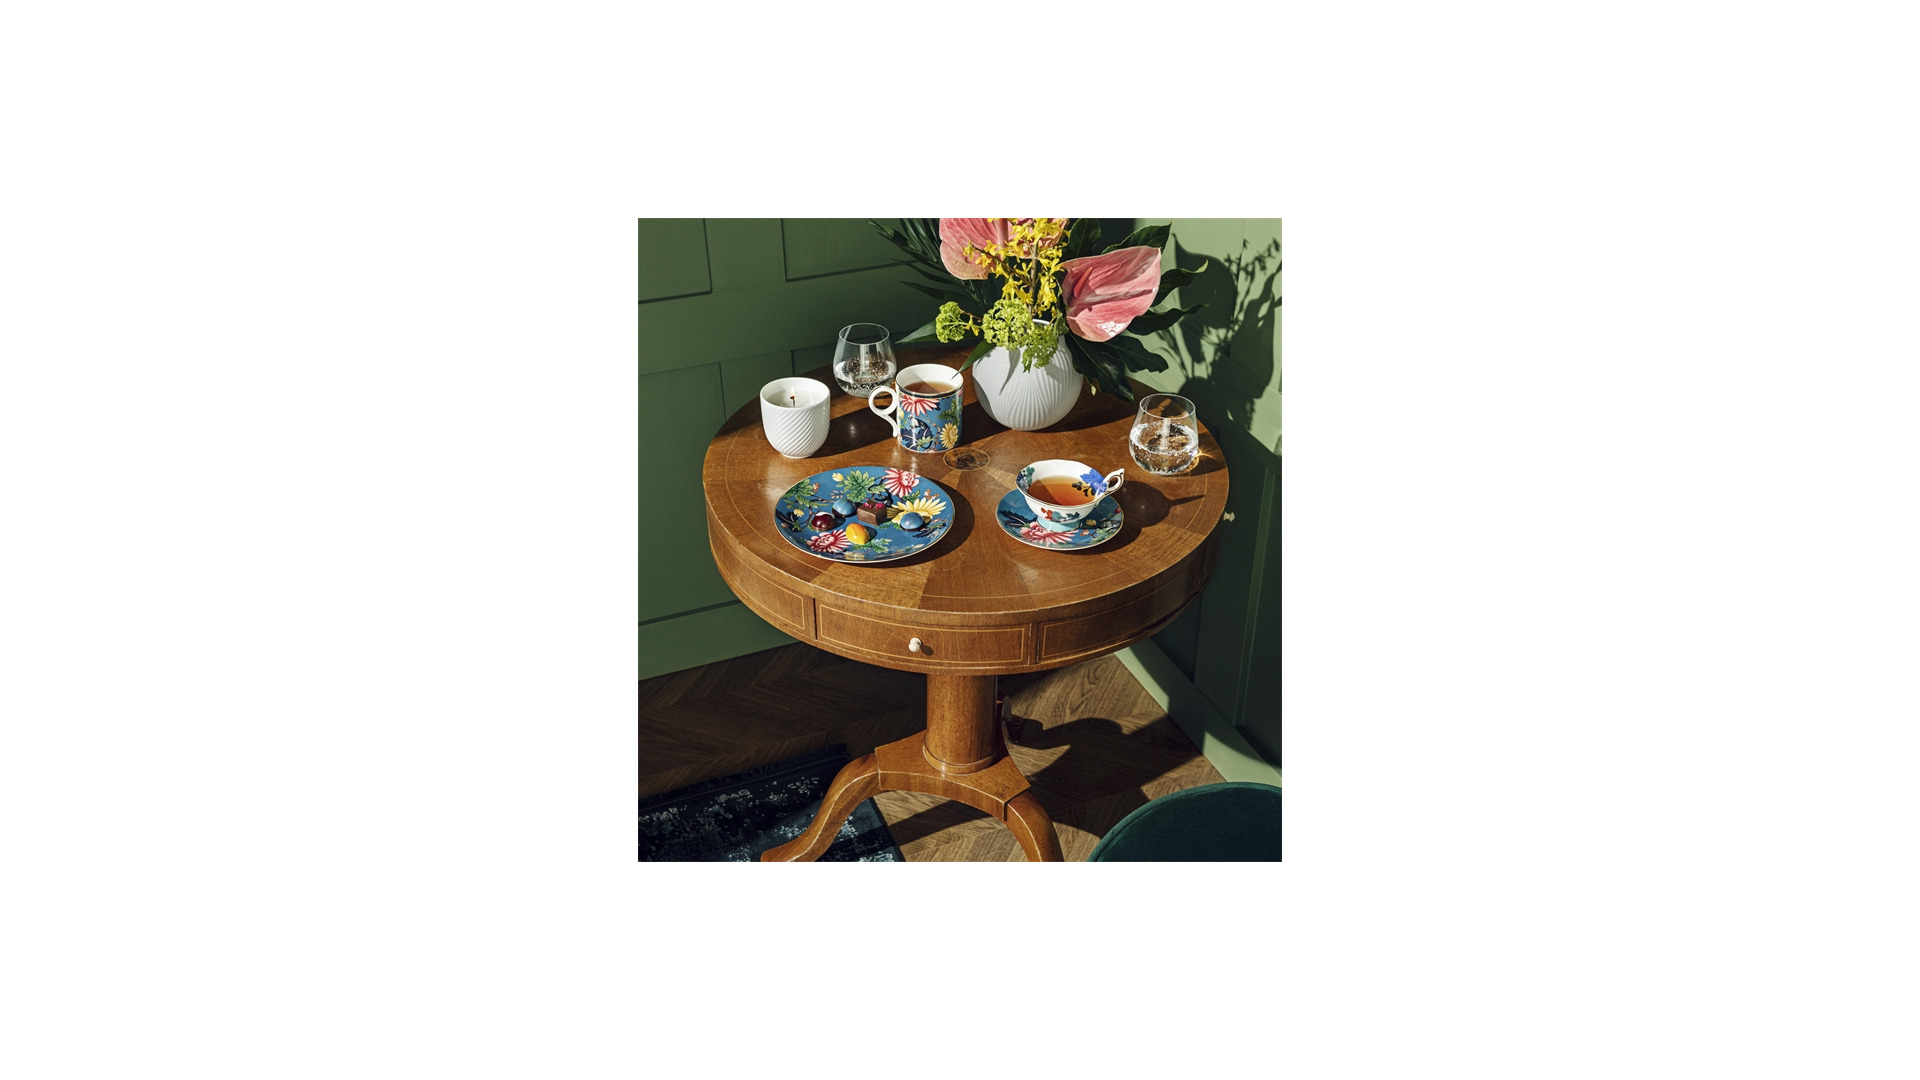 Чашка чайная с блюдцем Wedgwood Сапфировый сад 140 мл, фарфор